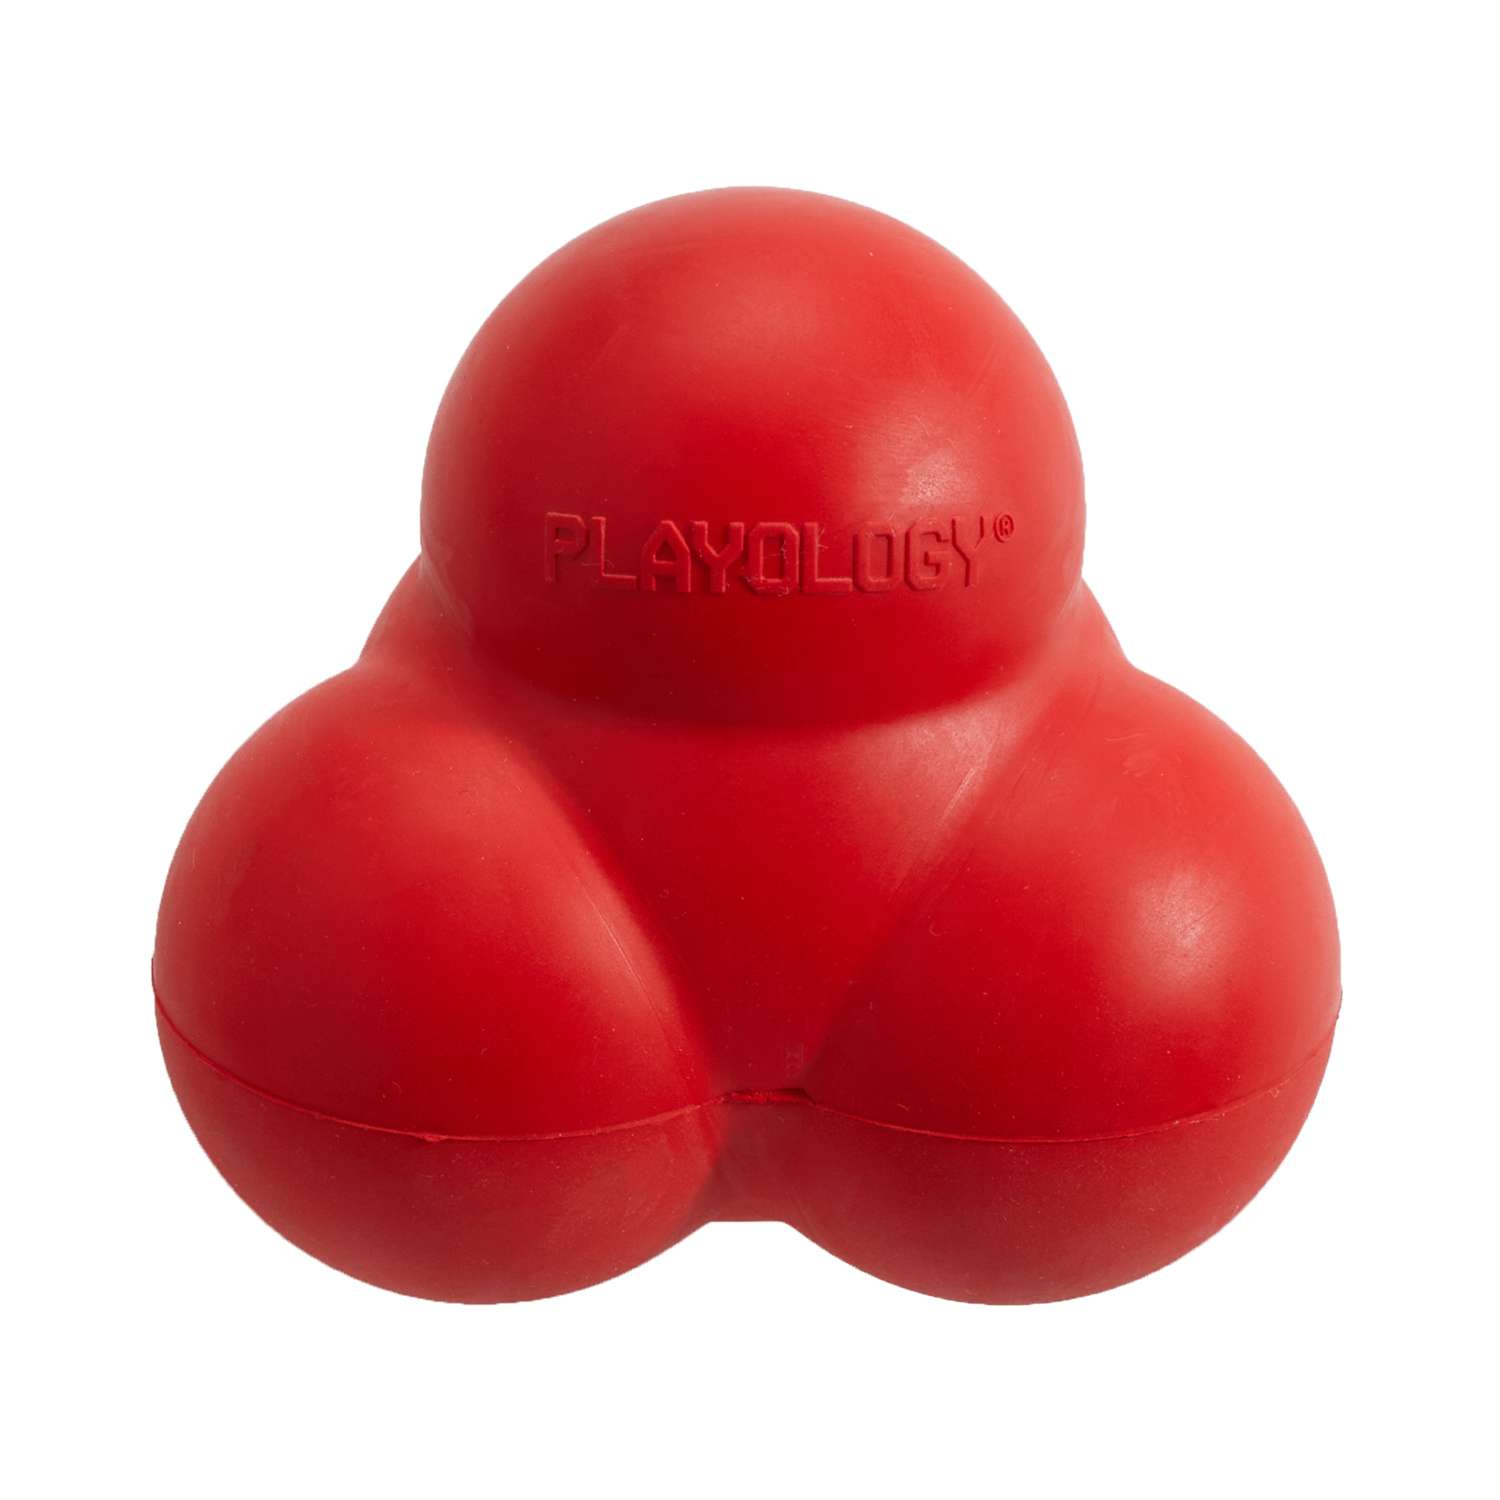 Жевательный тройной мяч Playology SQUEAKY BOUNCE BALL для собак средних и крупных пород с пищалкой и с ароматом говядины, цвет красный